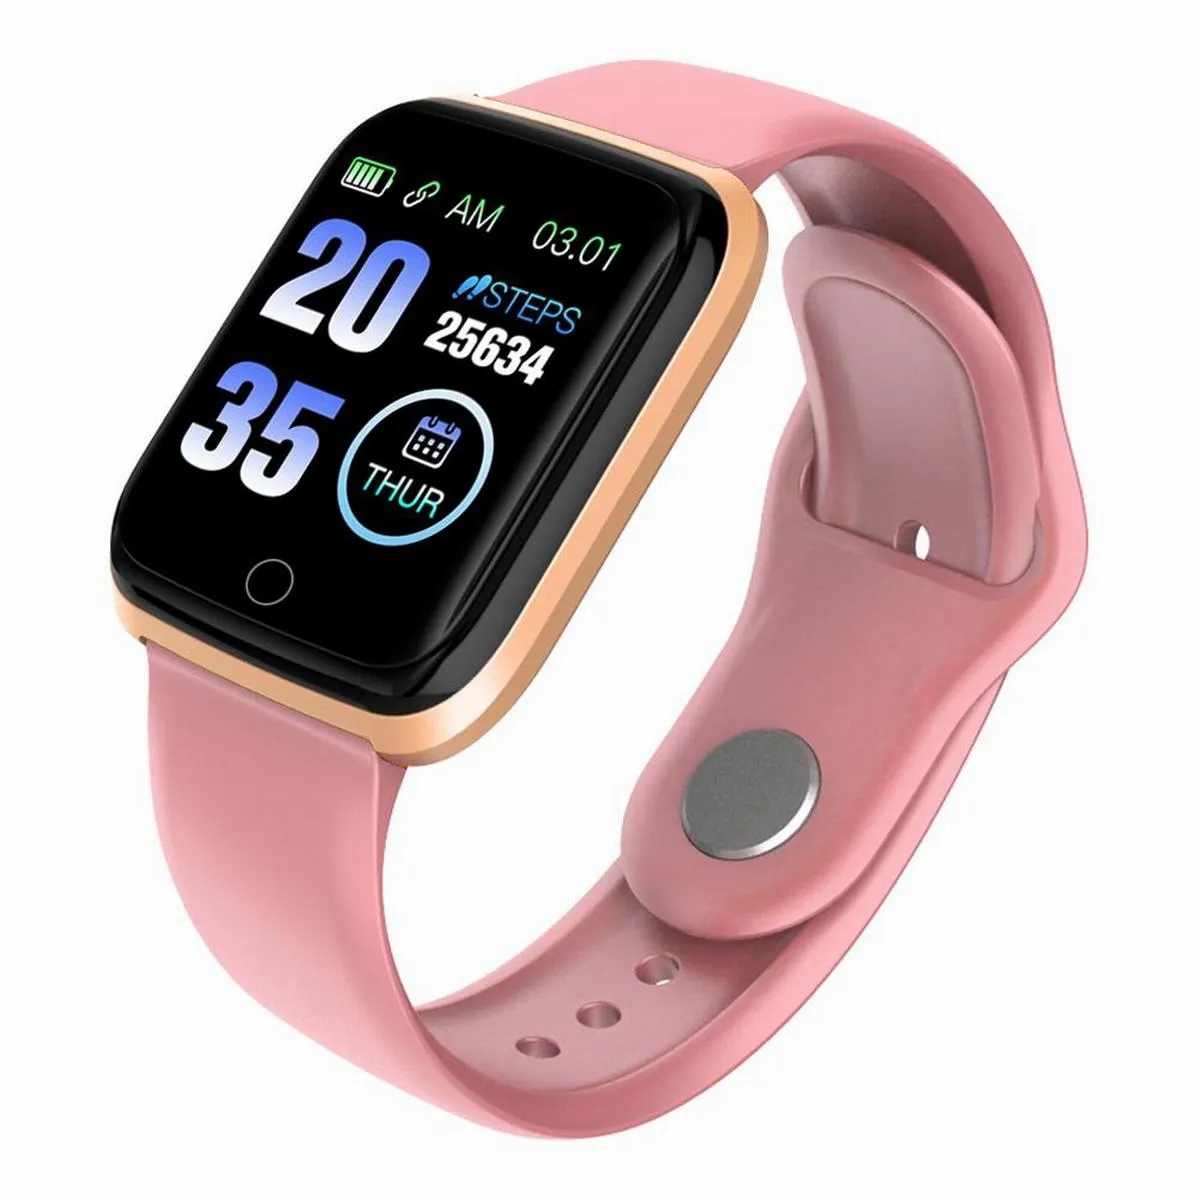 À Prova D 'Água Fitness Tracker Smart Watch Silicone Band Relógios Esporte Pedômetro Sono Tracker Coração Rate Monitor SmartWatch para iOS Android